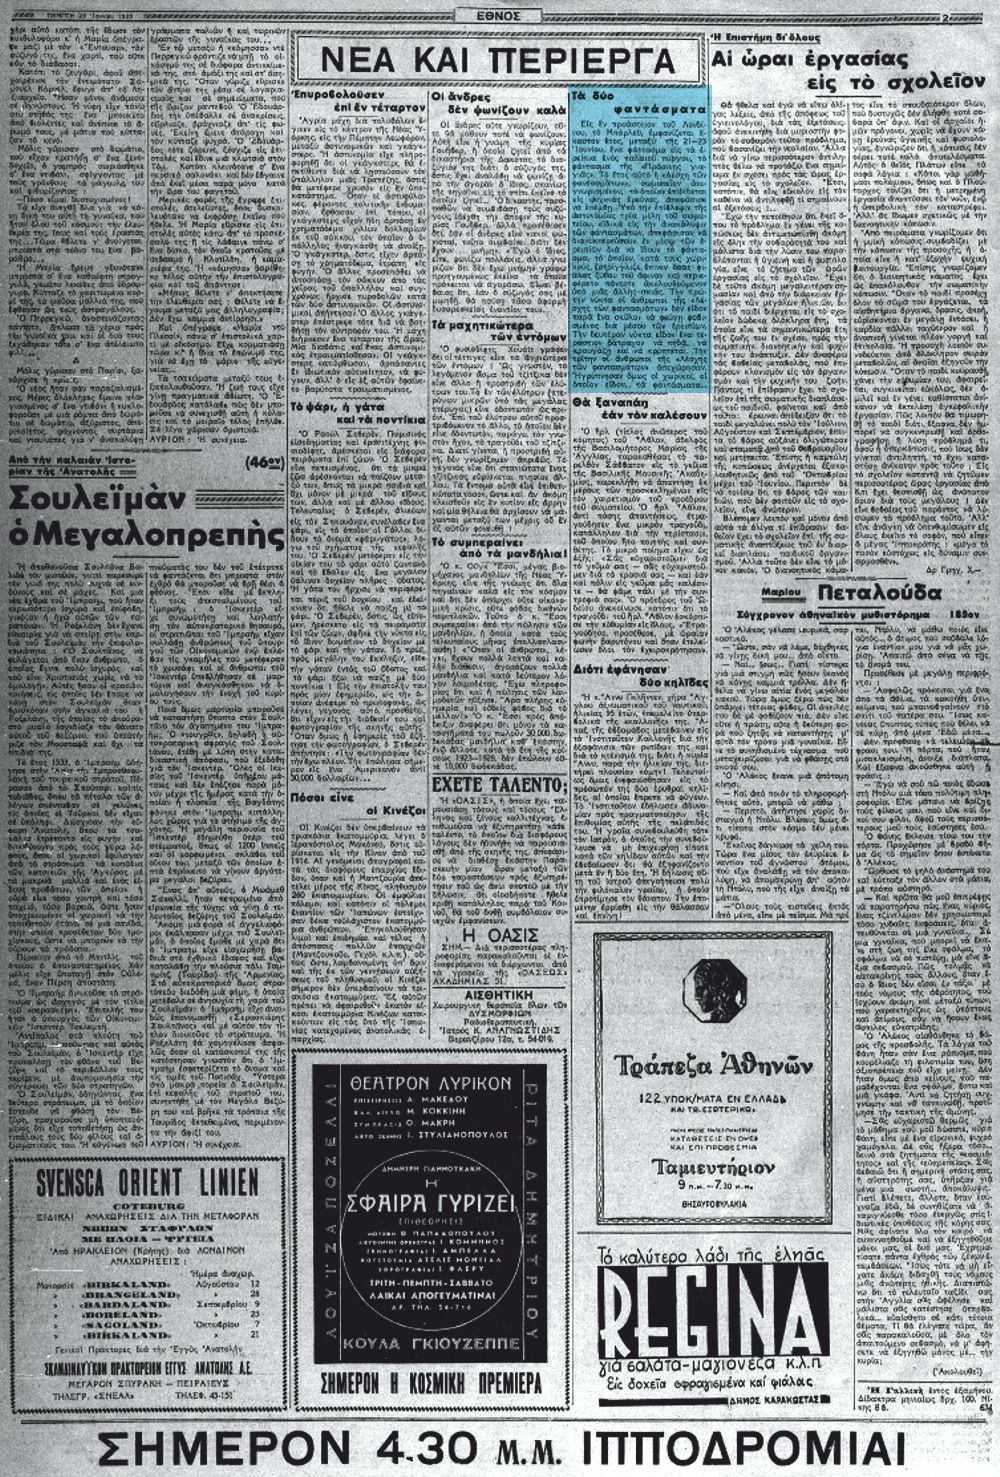 Το άρθρο, όπως δημοσιεύθηκε στην εφημερίδα "ΕΘΝΟΣ", στις 29/06/1939